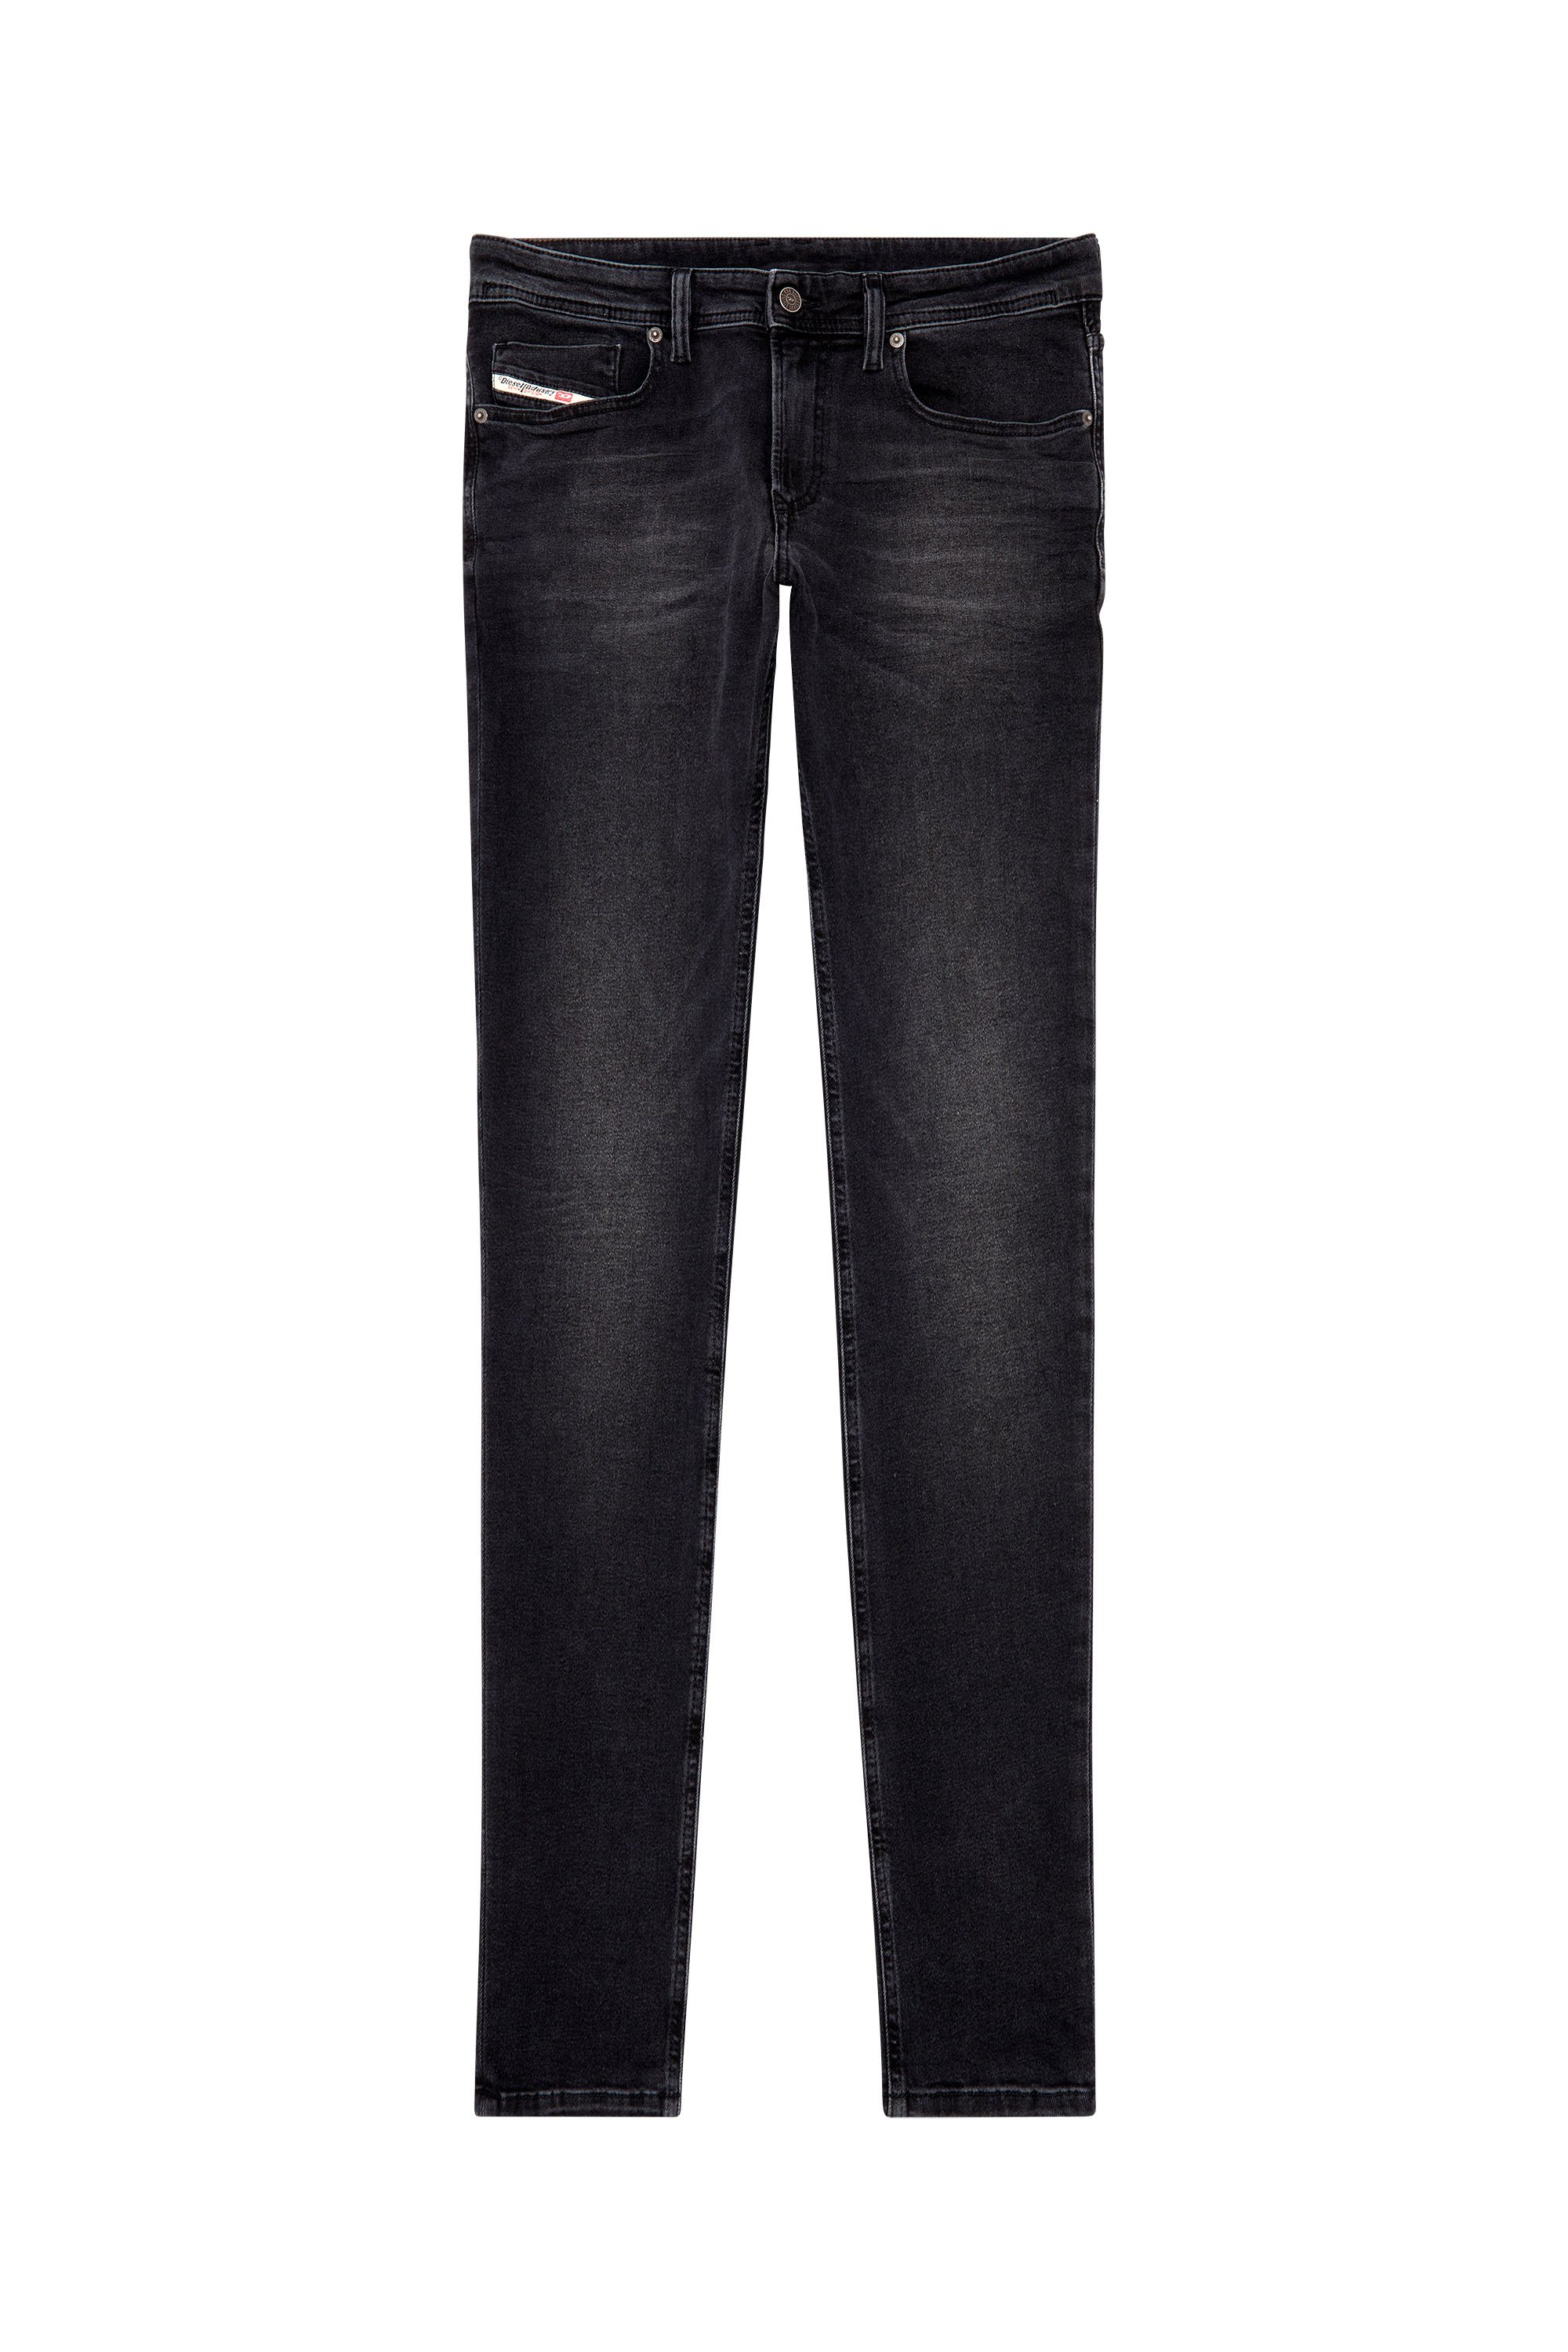 Diesel - Skinny Jeans 1979 Sleenker 0PFAS, Black/Dark grey - Image 5